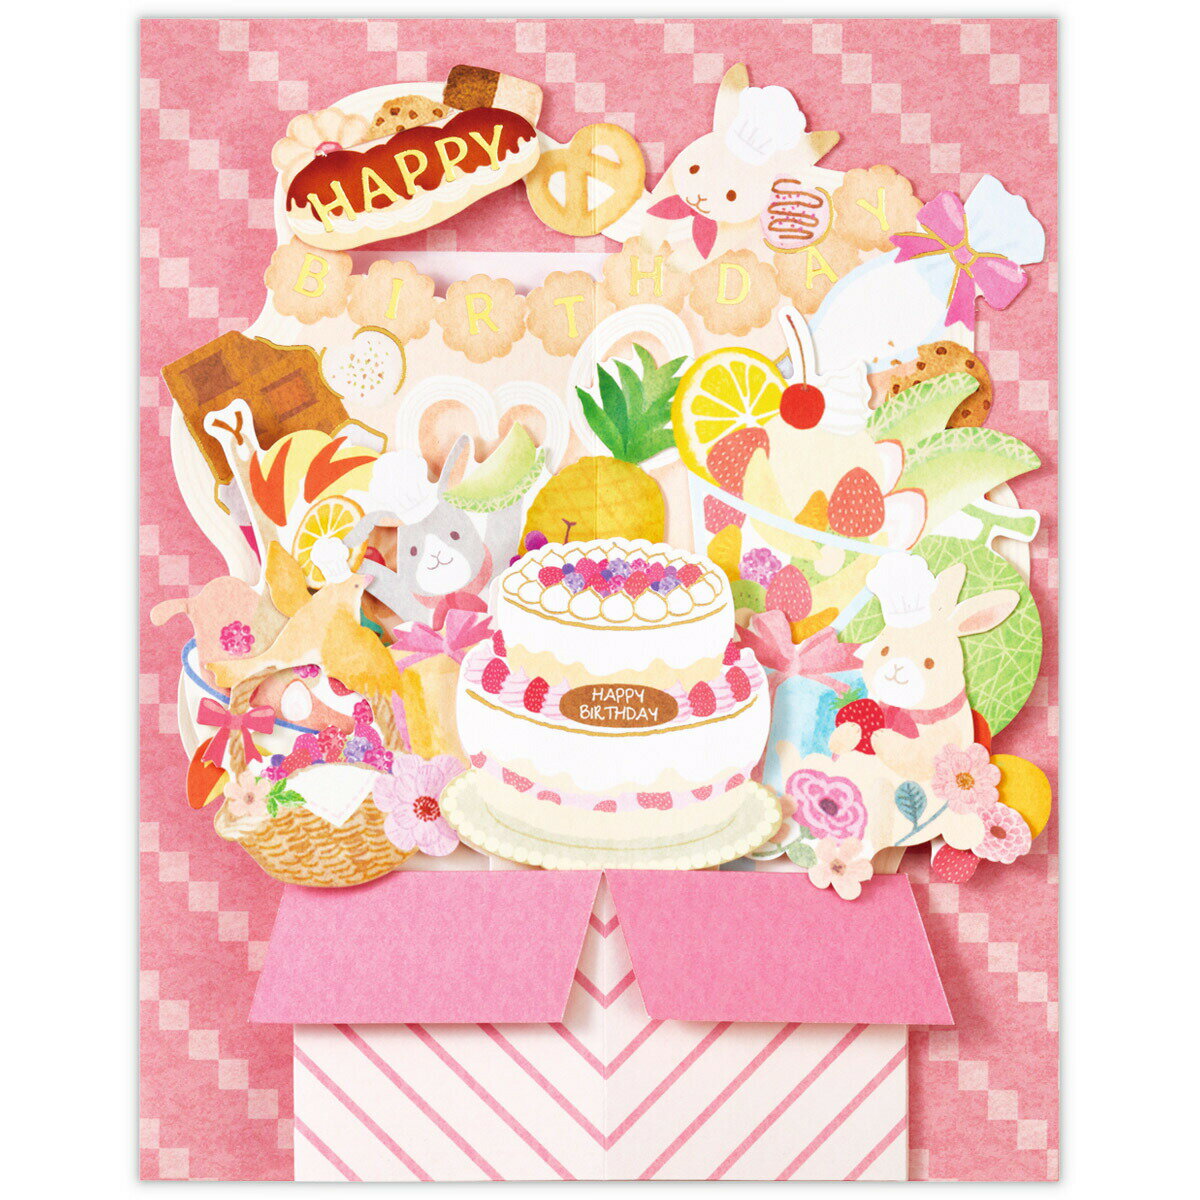 グリーティングカード スイーツボックス 日本ホールマーク EAR-797485 【バースデーカード 誕生日祝い BIRTHDAY 立体 ダイカット 立てて飾れる お菓子 うさぎ かわいい】